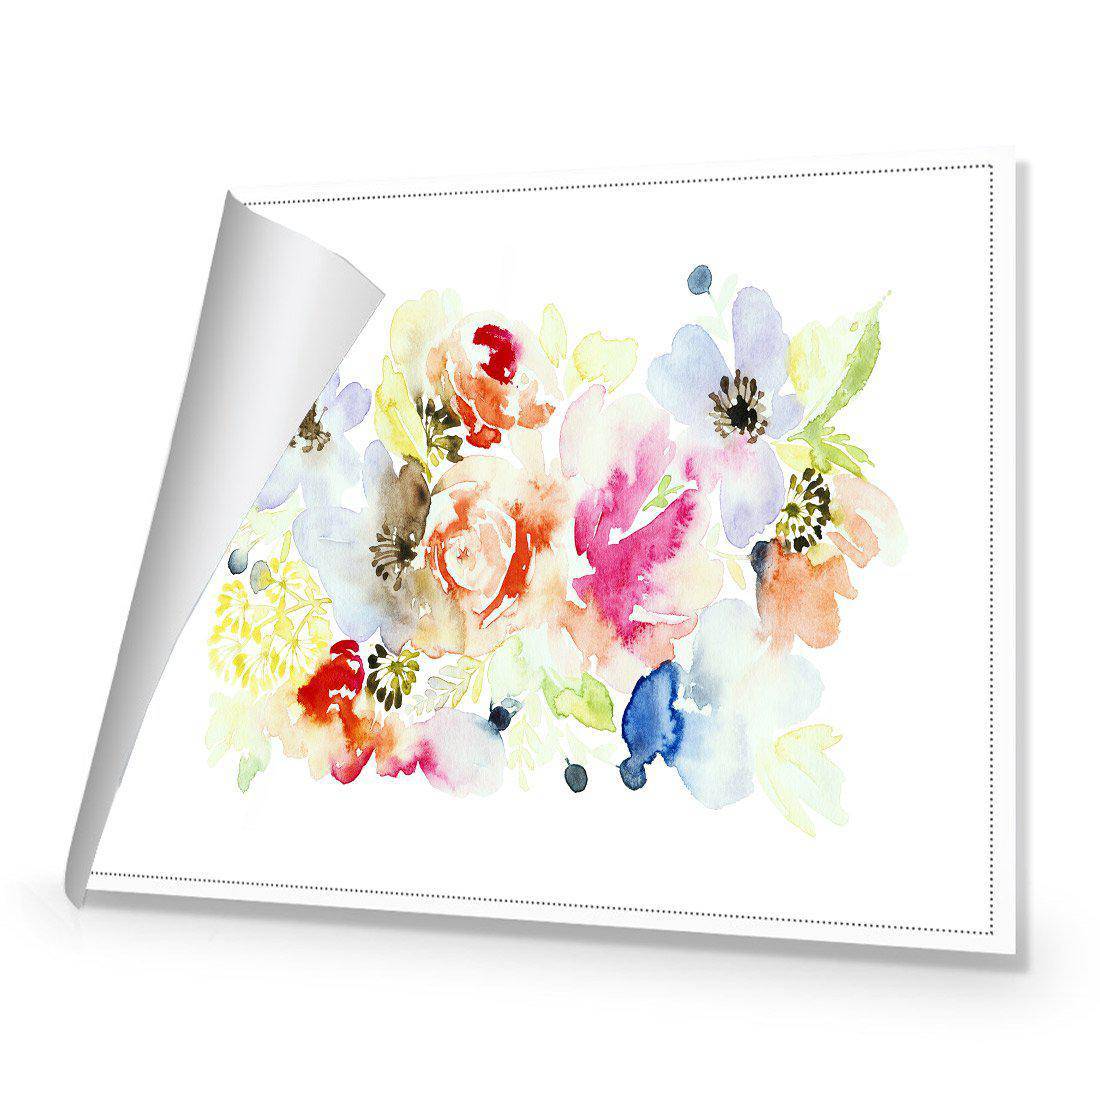 Floral Array Canvas Art-Canvas-Wall Art Designs-45x30cm-Rolled Canvas-Wall Art Designs